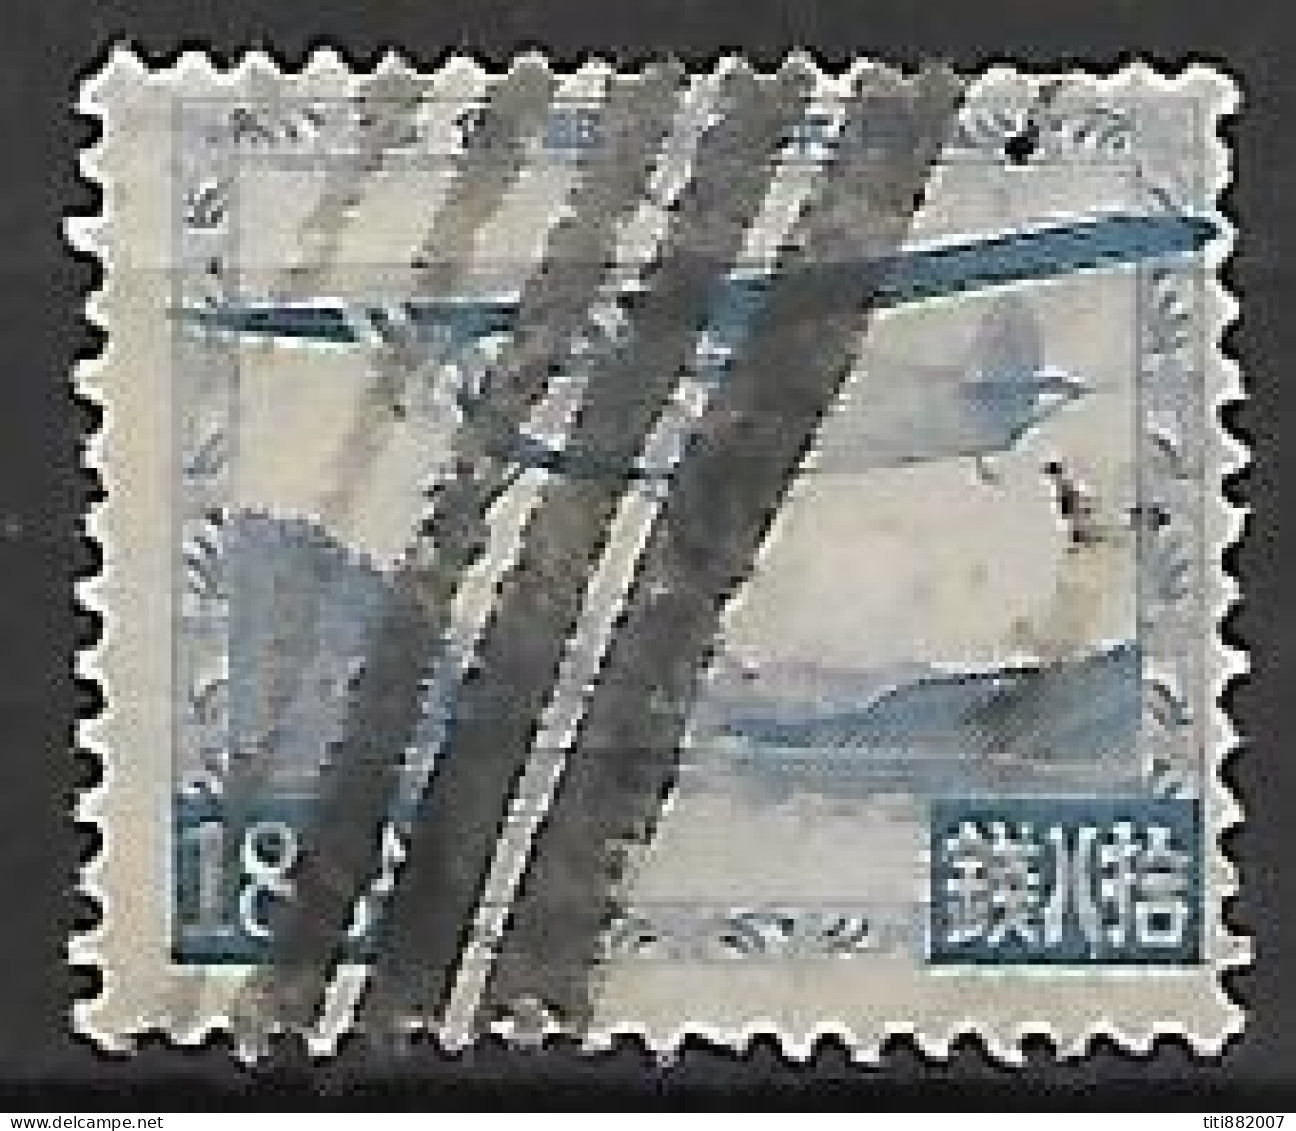 JAPON    -    Aéro.   1929.    Y&T N° 5 Oblitéré.   Avion - Airmail